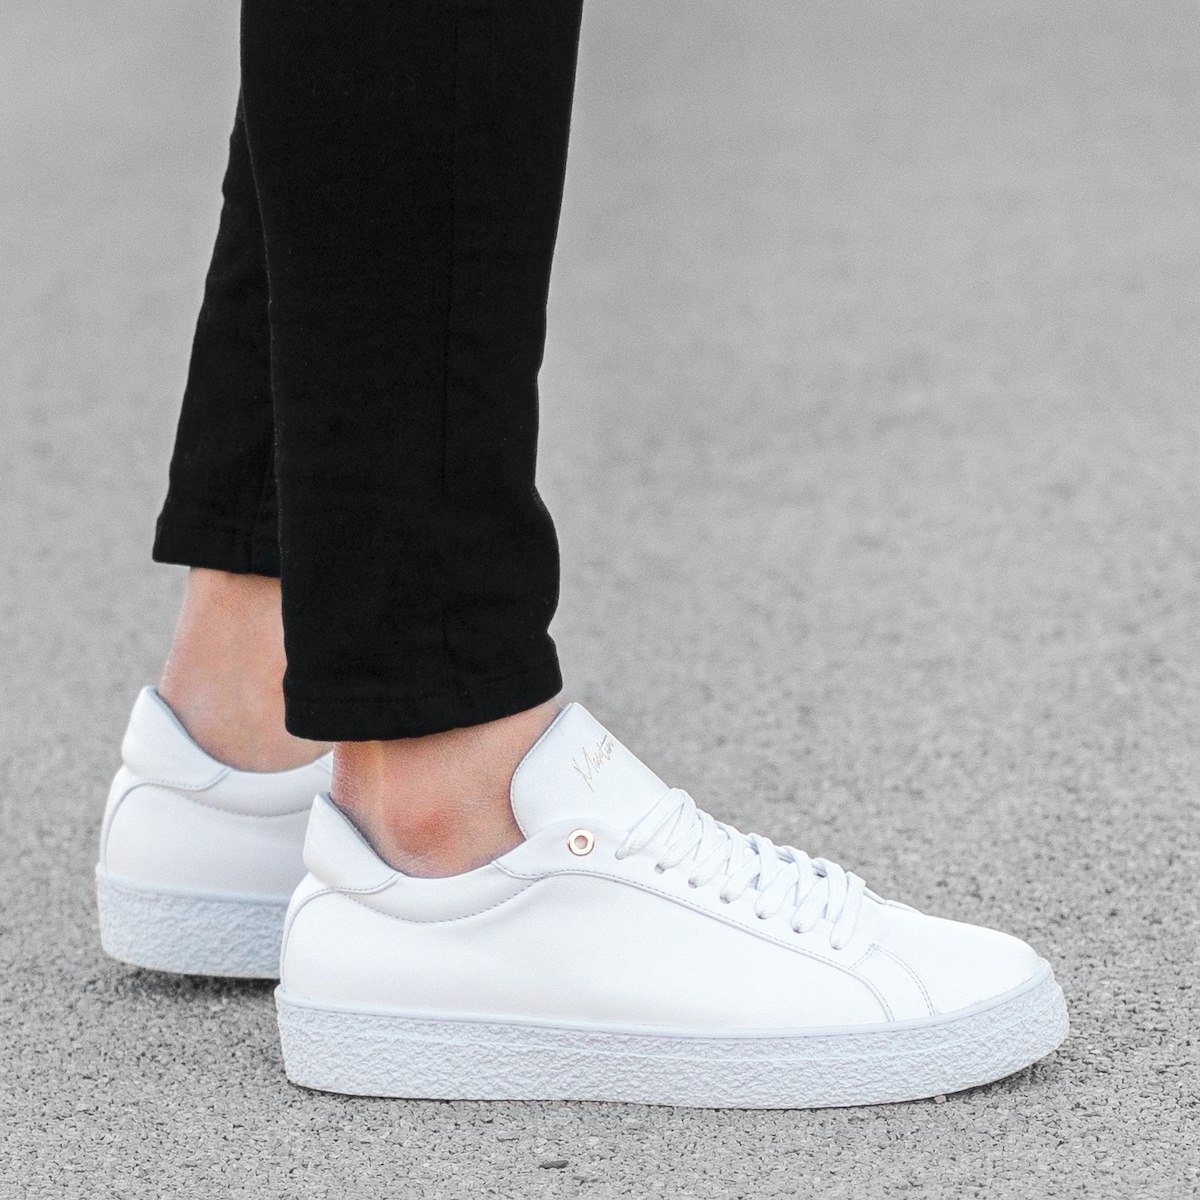 Herren Sneakers Schuhe mit Gummisohle in weiß - 2